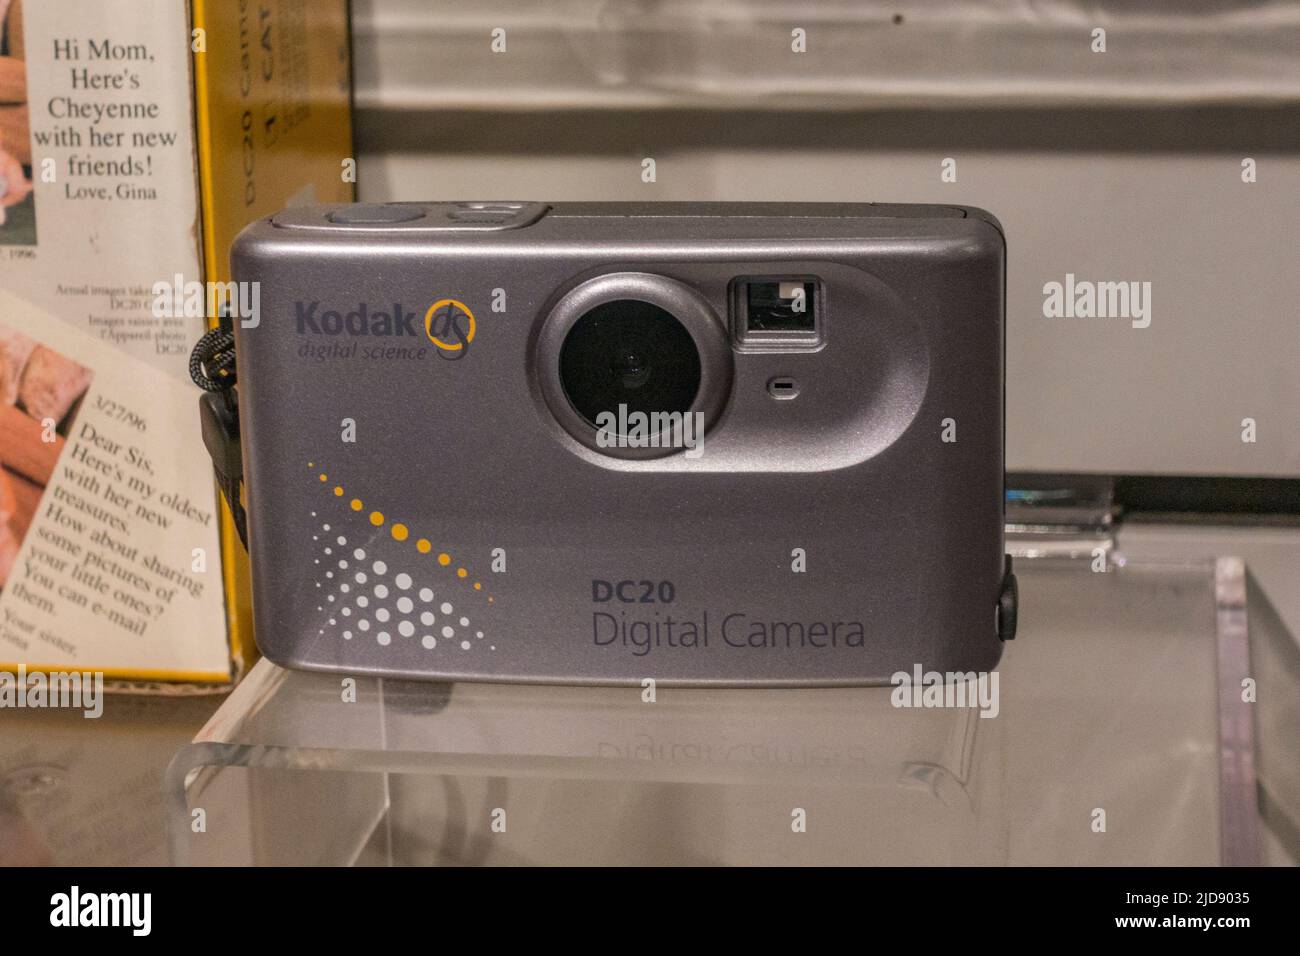 Una fotocamera digitale Kodak DC20 (c1996) in esposizione in un museo multimediale. È stato realizzato da Chinon e pubblicato anche come Chinon Pocket Digital ES-1000 Foto Stock